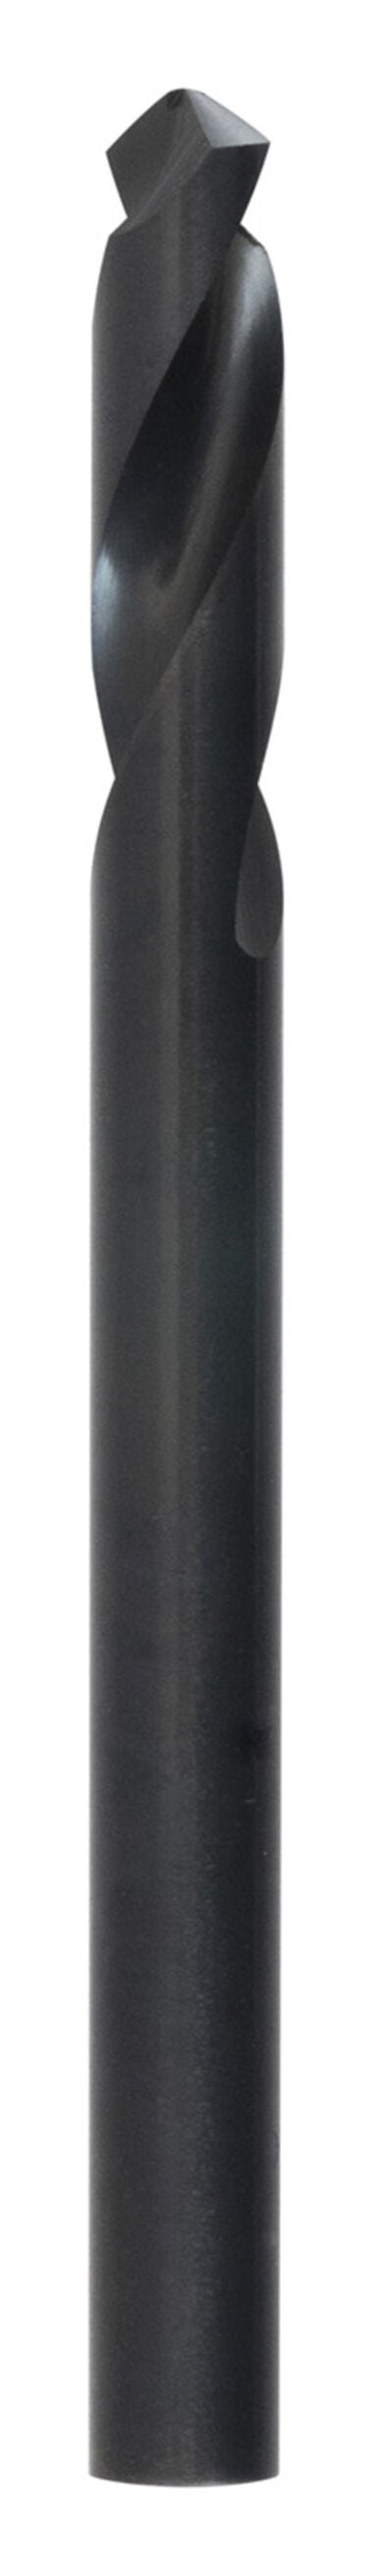 MK Morse Pilot Drill Bit 1/4in X 3 3/32in 10pk